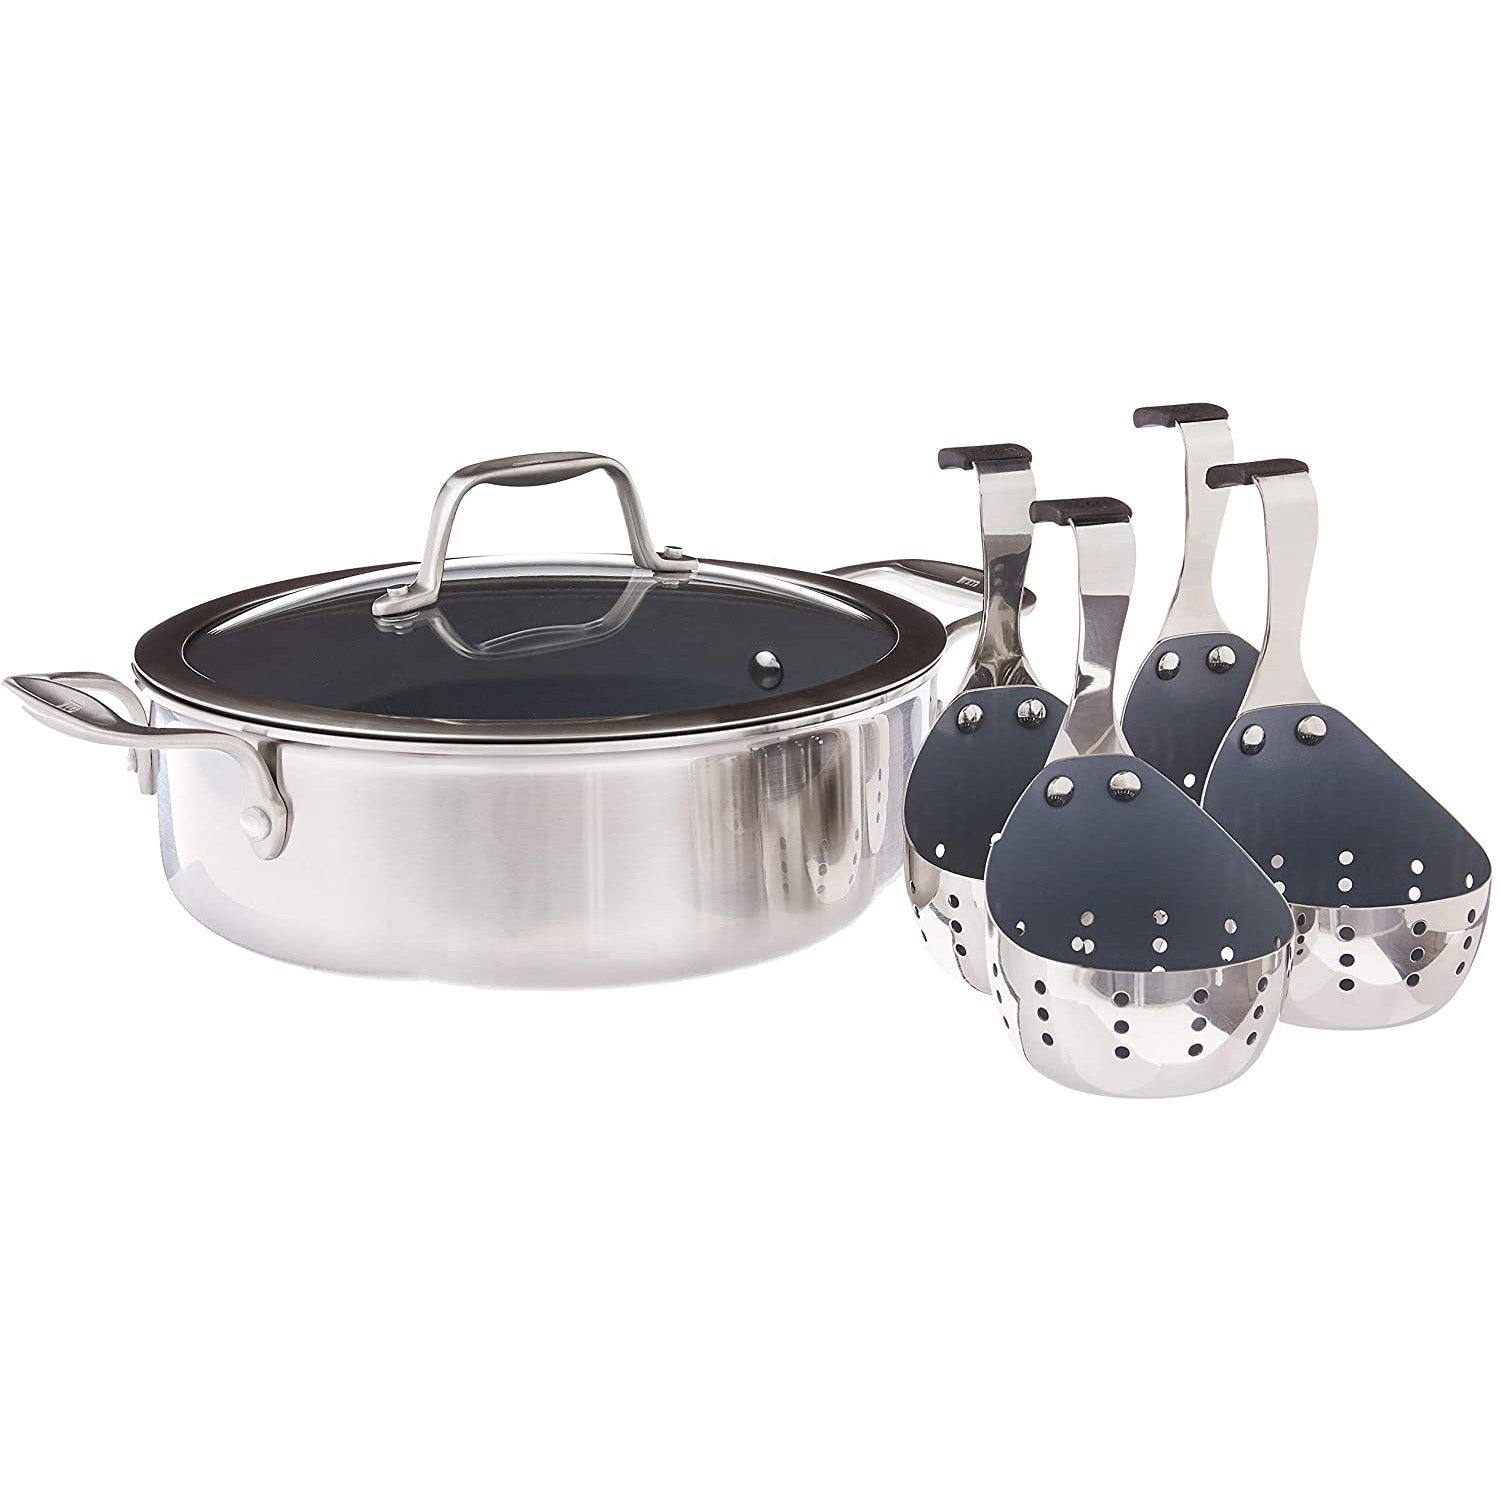 Buy ZWILLING Spirit Ceramic Nonstick Frying pan set